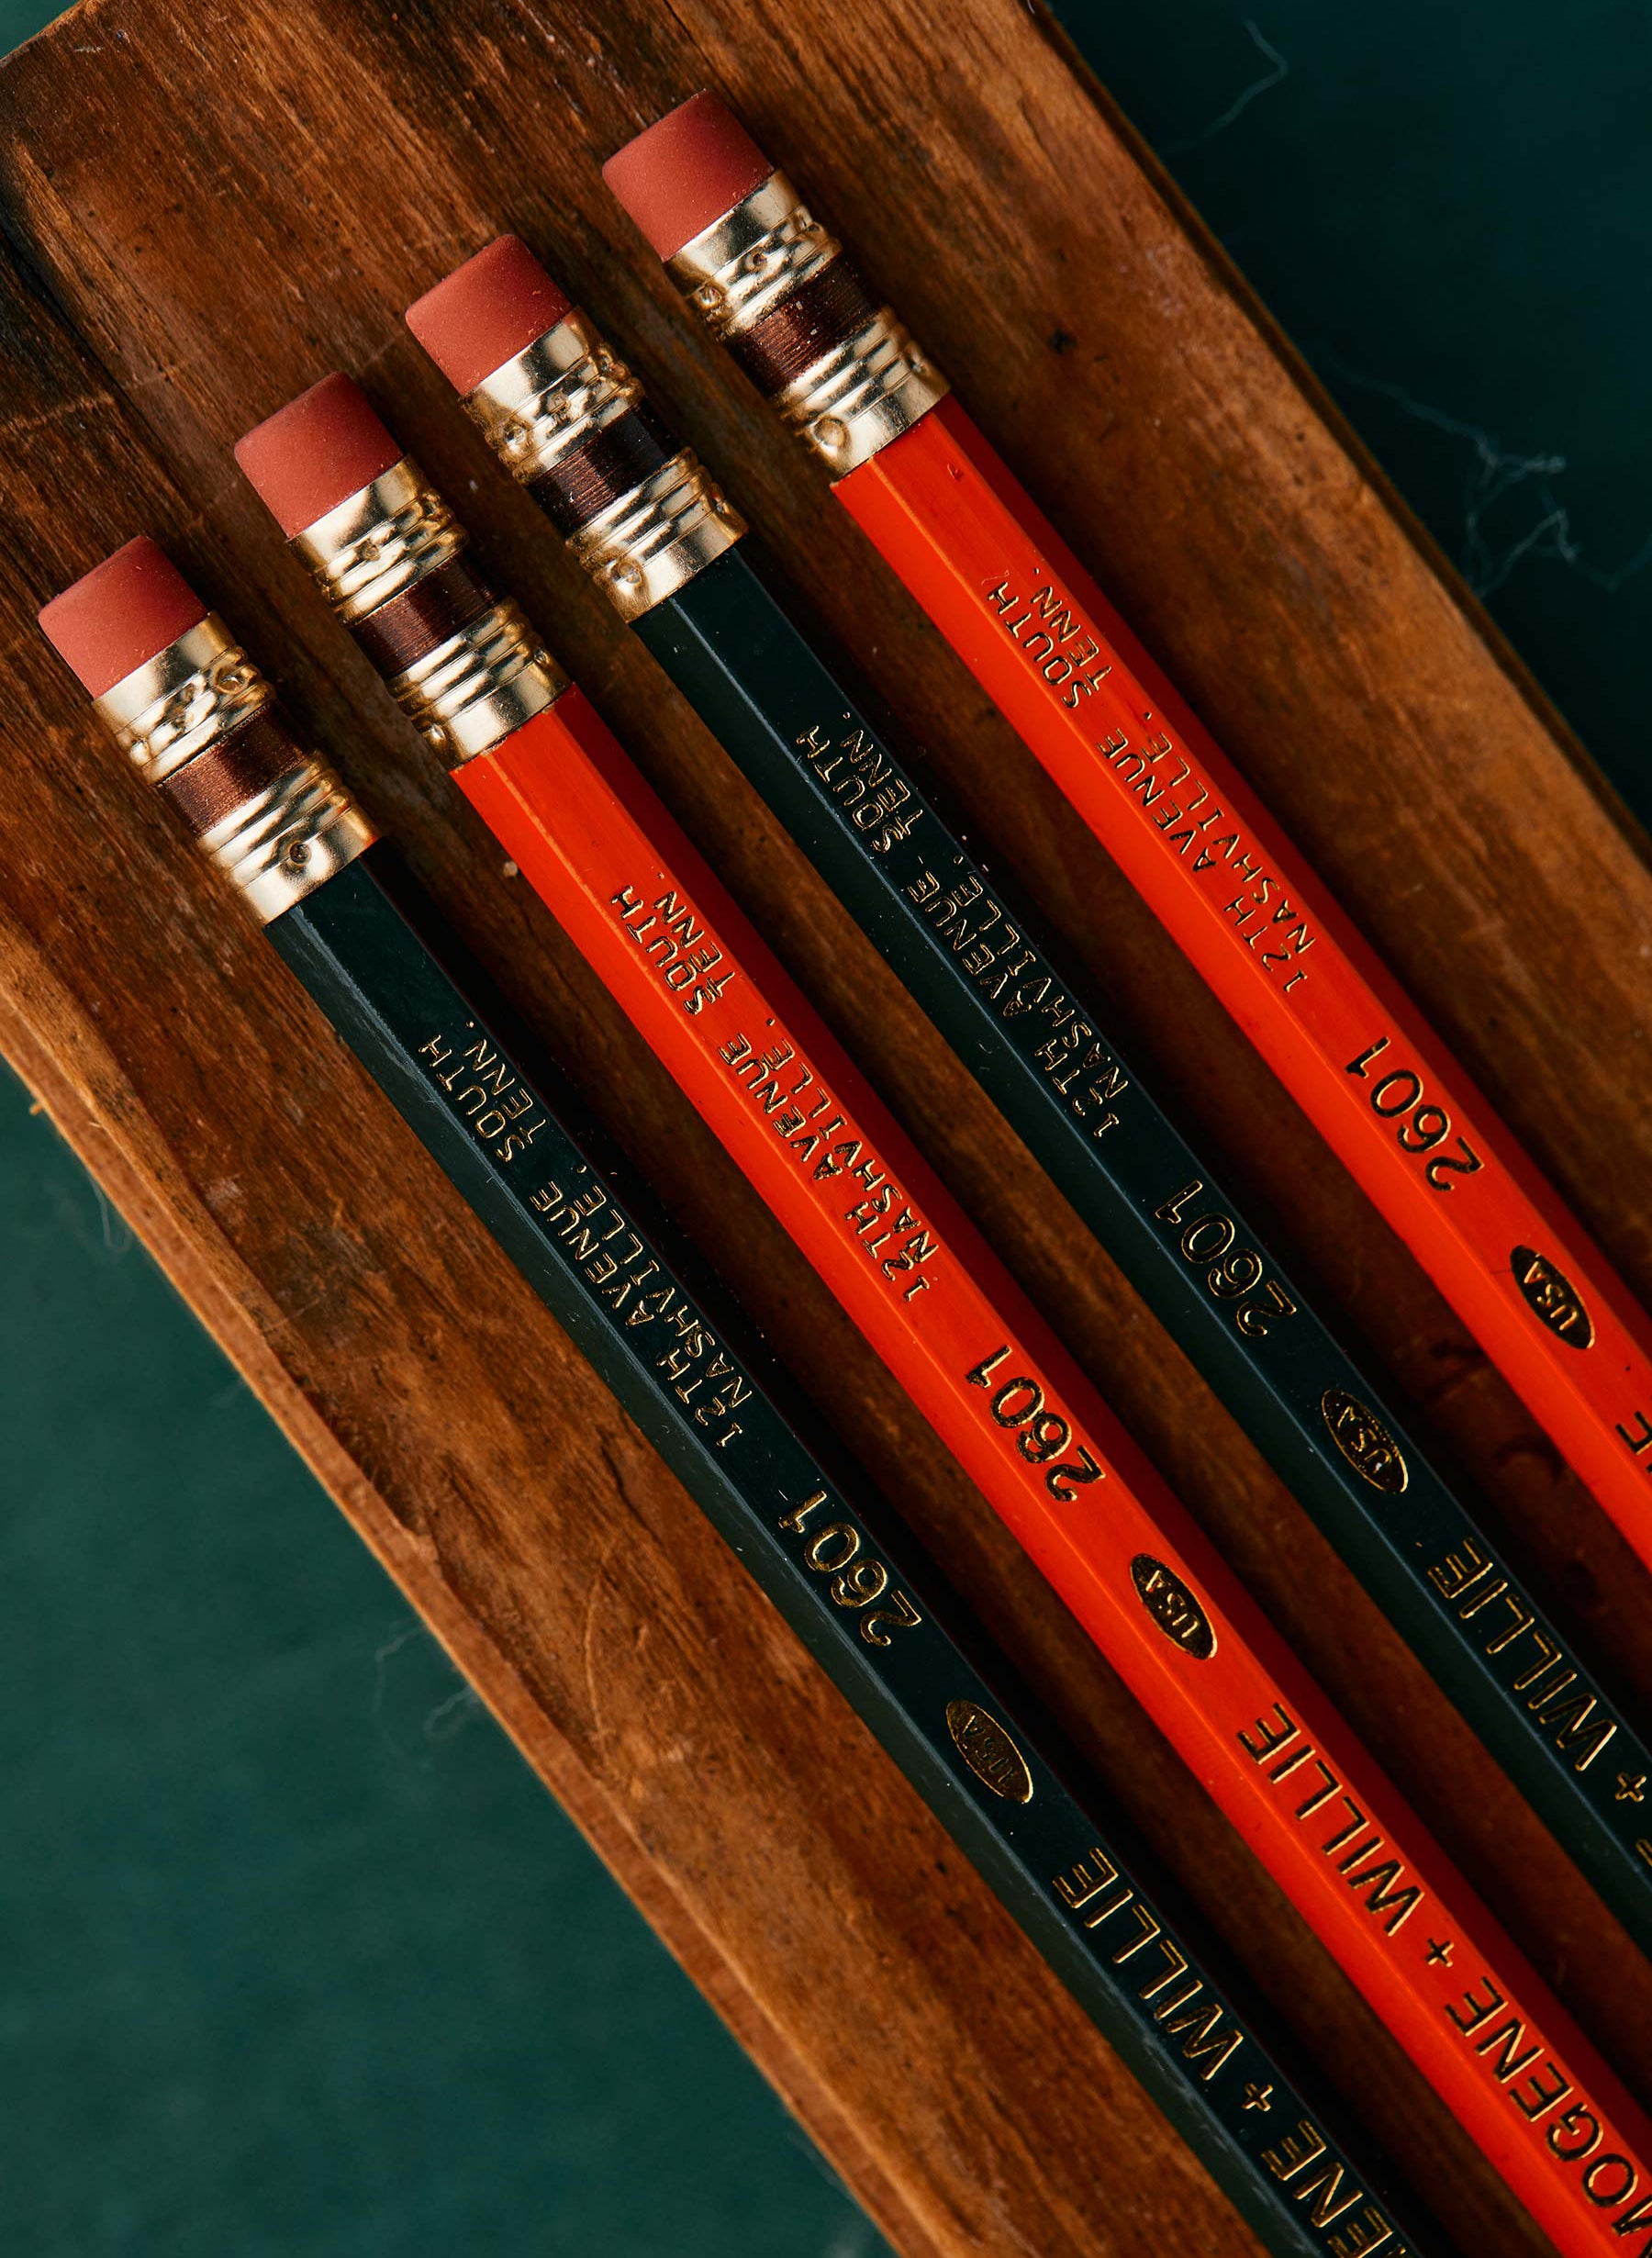 Musgrave TOT Jumbo Pencils (12 Pack)